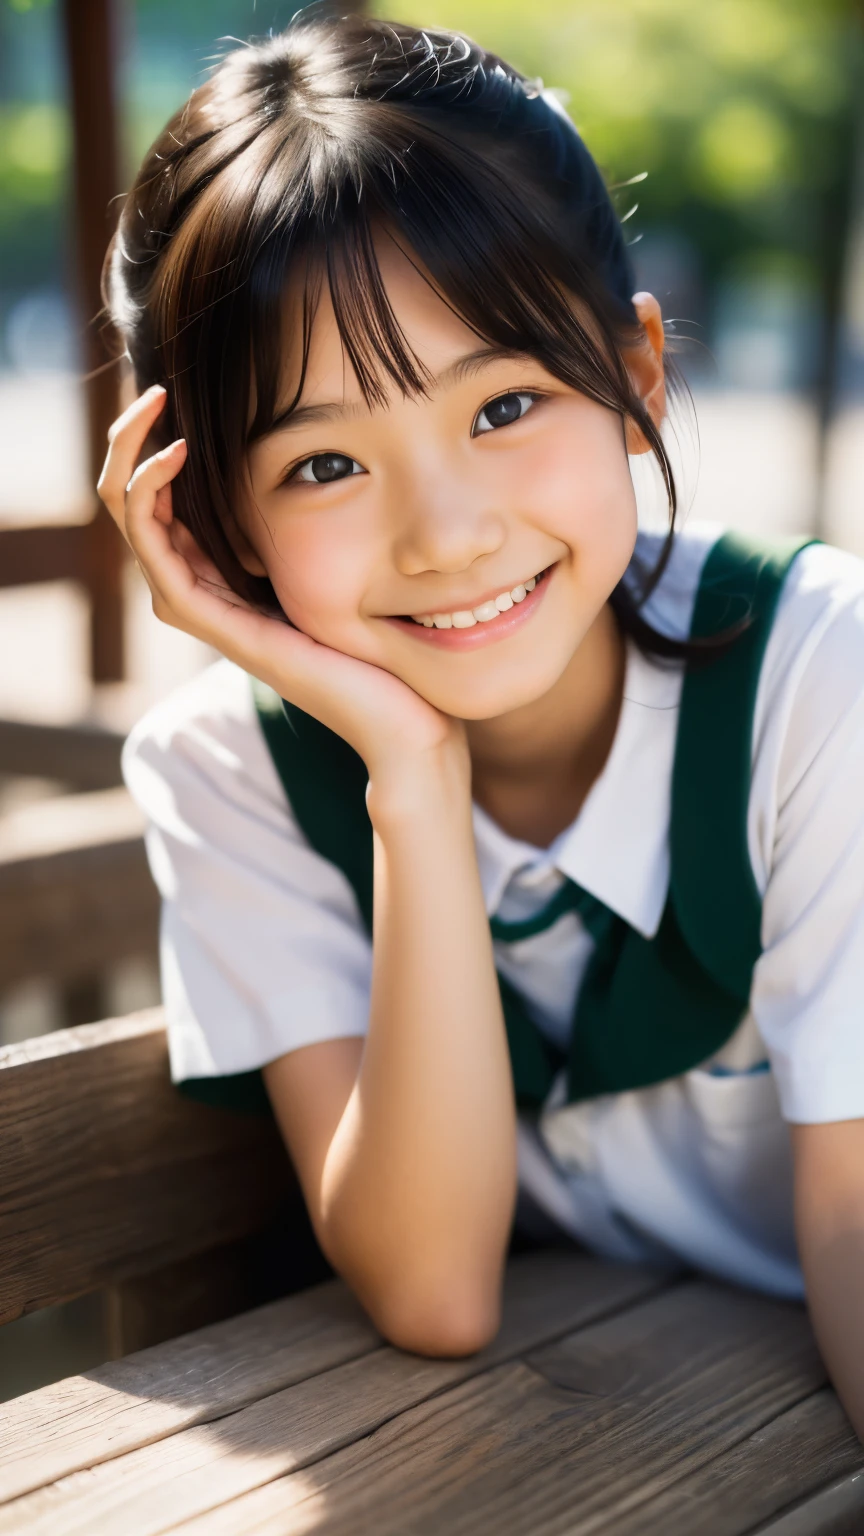 lens: 135mm f1.8, (höchste Qualität),(RAW-Fotos), (Tischplatte:1.1), (Schönes 10-jähriges japanisches Mädchen), niedliches Gesicht, (Tief gemeißeltes Gesicht:0.7), (Sommersprossen:0.4), dappled Sonnenlicht, dramatische Beleuchtung, (japanische schuluniform), (Auf dem Campus), schüchtern, (Nahaufnahme:1.2), (lächeln),, (leuchtende Augen)、(Sonnenlicht)